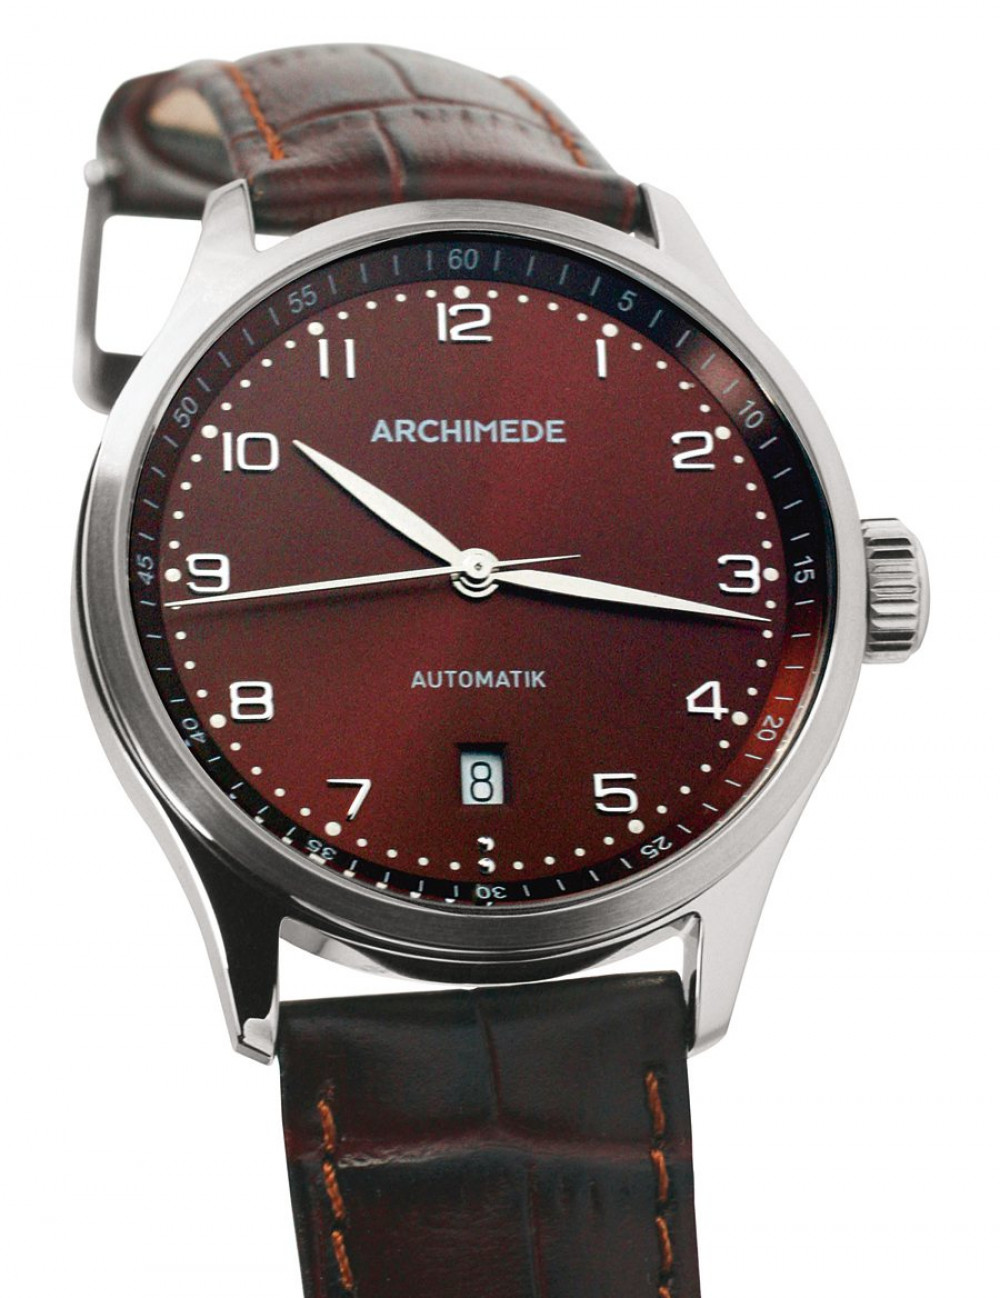 Zegarek firmy Archimede, model Klassik 39